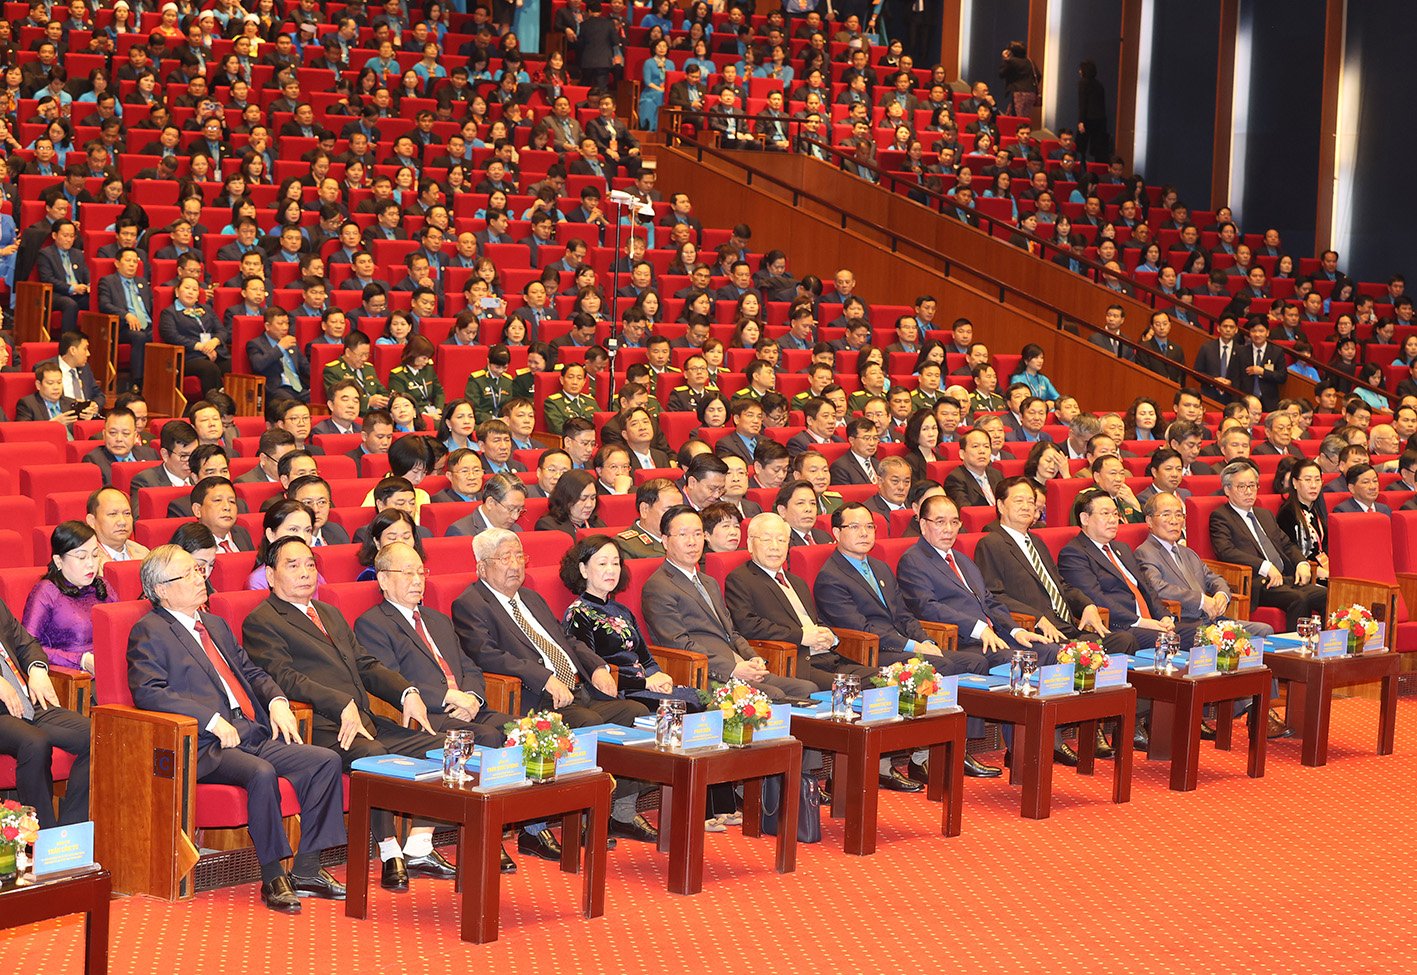 Khai mạc trọng thể Đại hội đại biểu toàn quốc Công đoàn Việt Nam lần thứ XIII -0